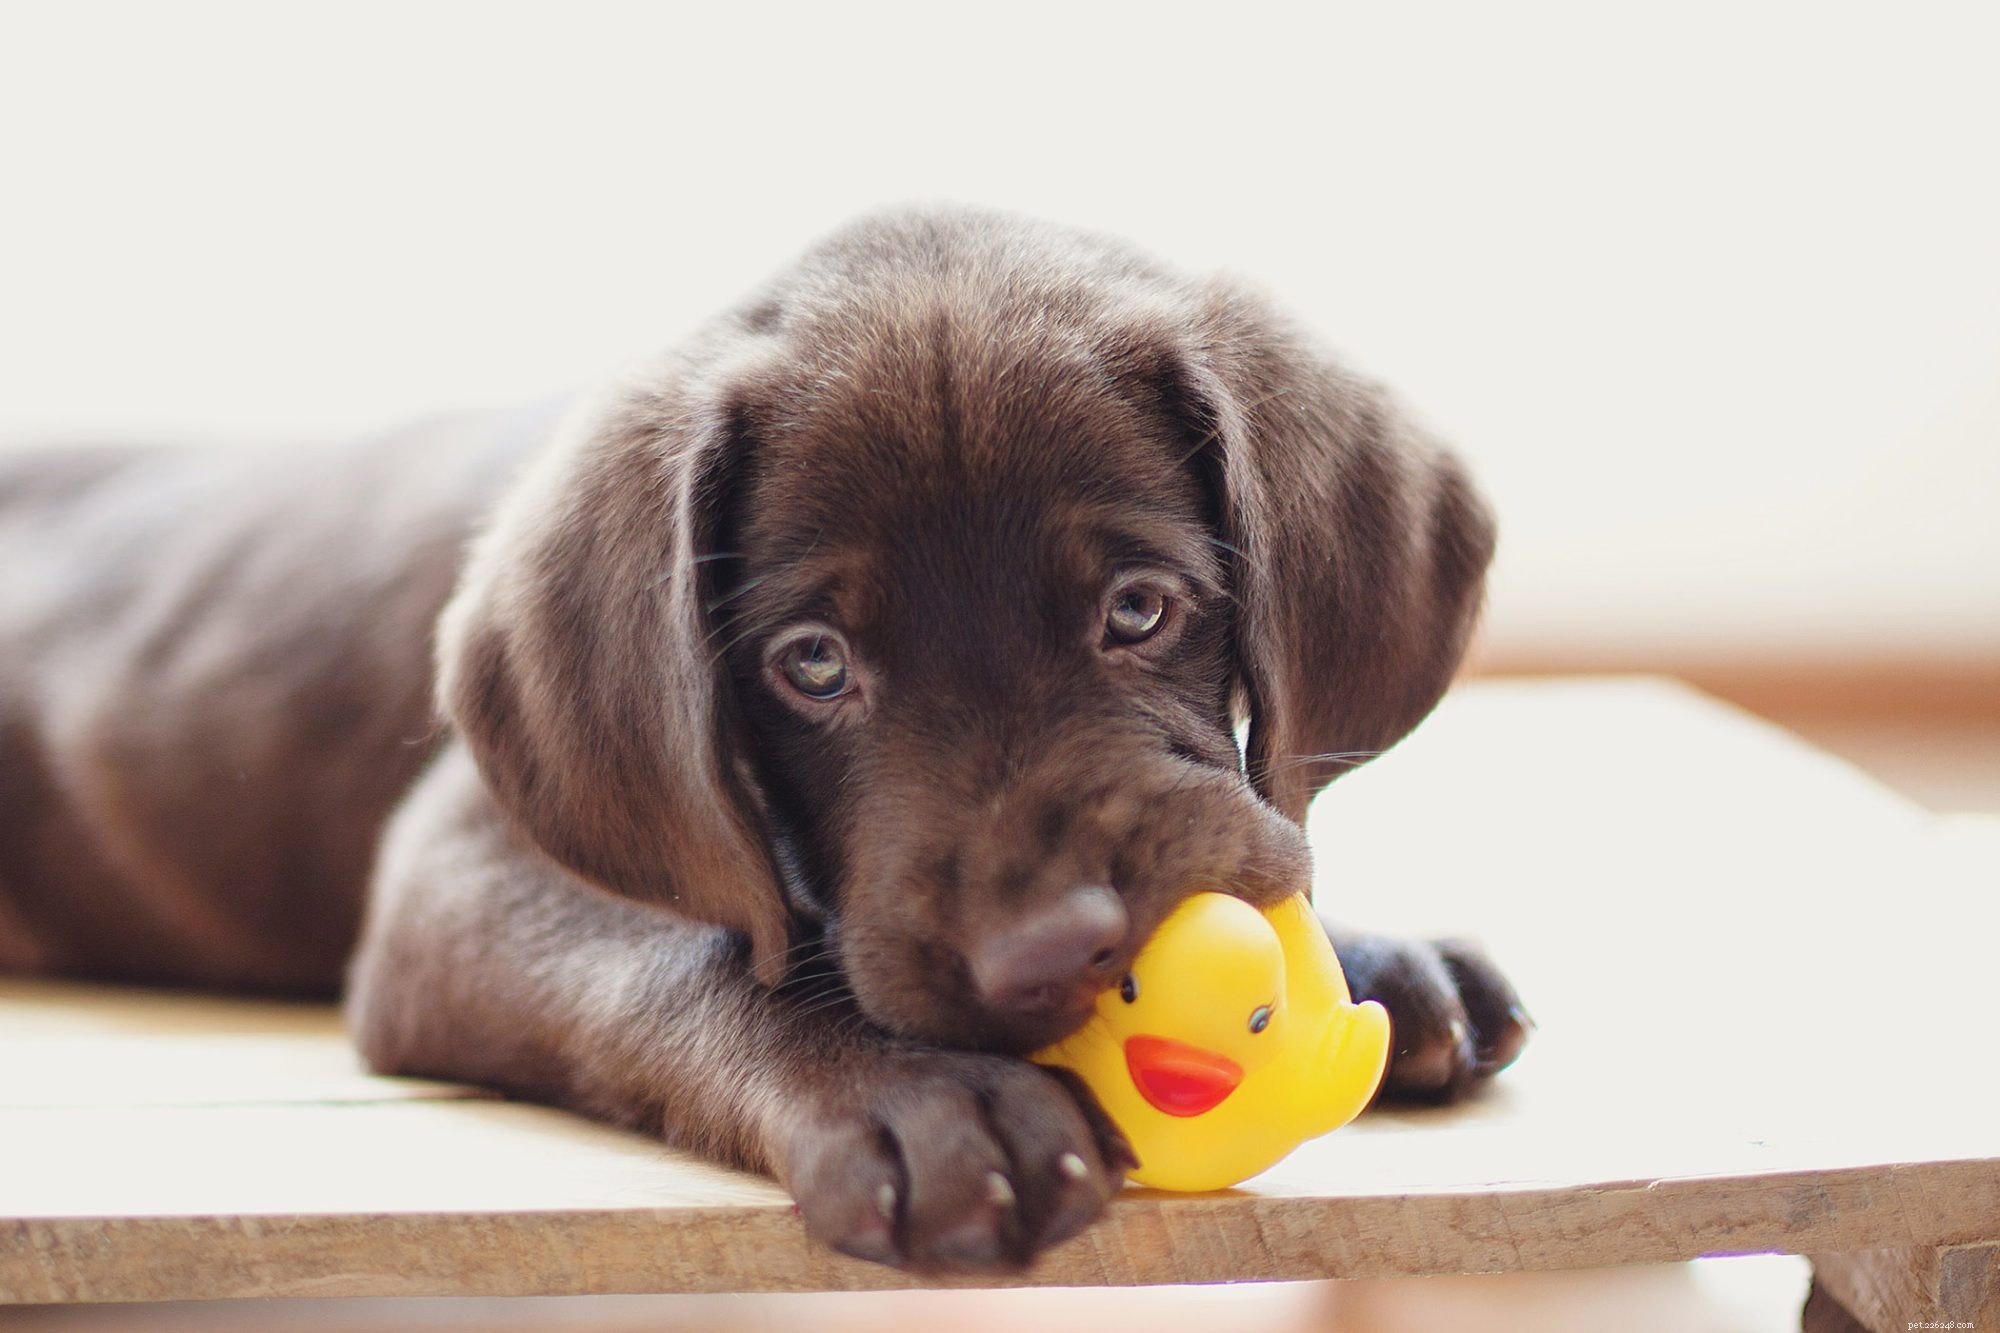 개가 삐걱거리는 장난감을 좋아하는 이유는 무엇입니까? 동물 행동학자가 강아지가 원하는 것을 설명합니다